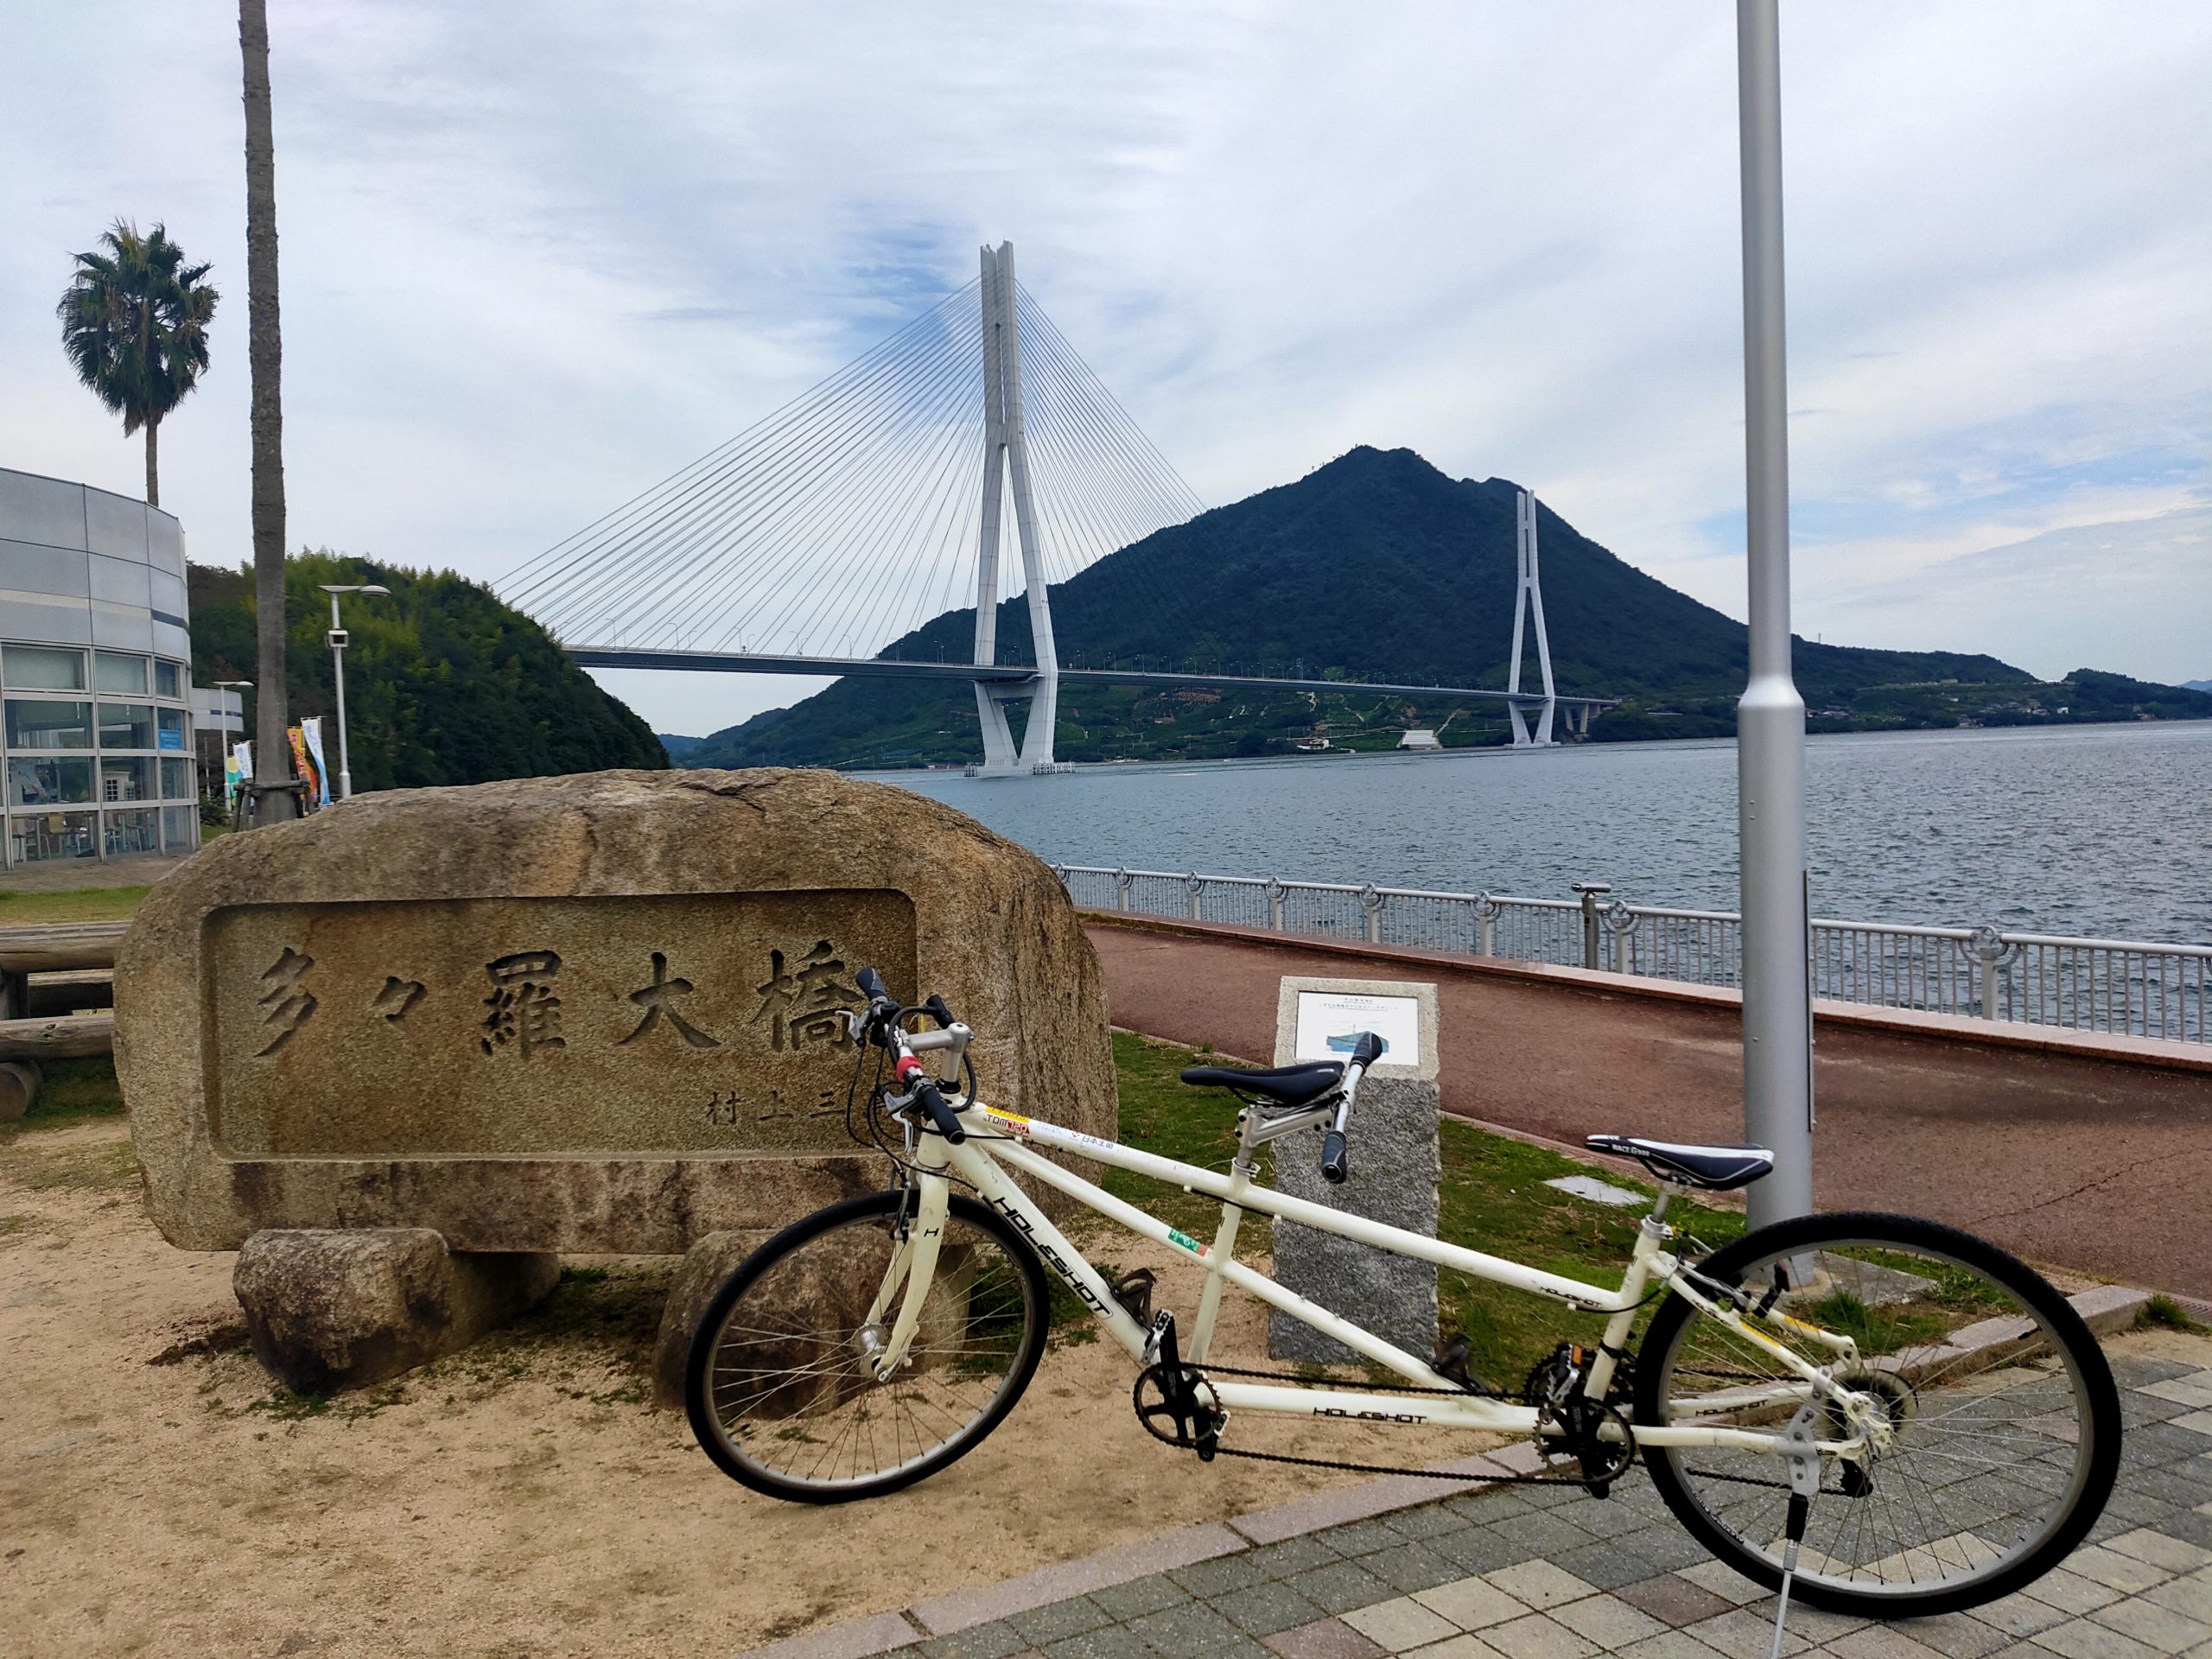 しまなみ海道をタンデム自転車で走ると何時間かかるか